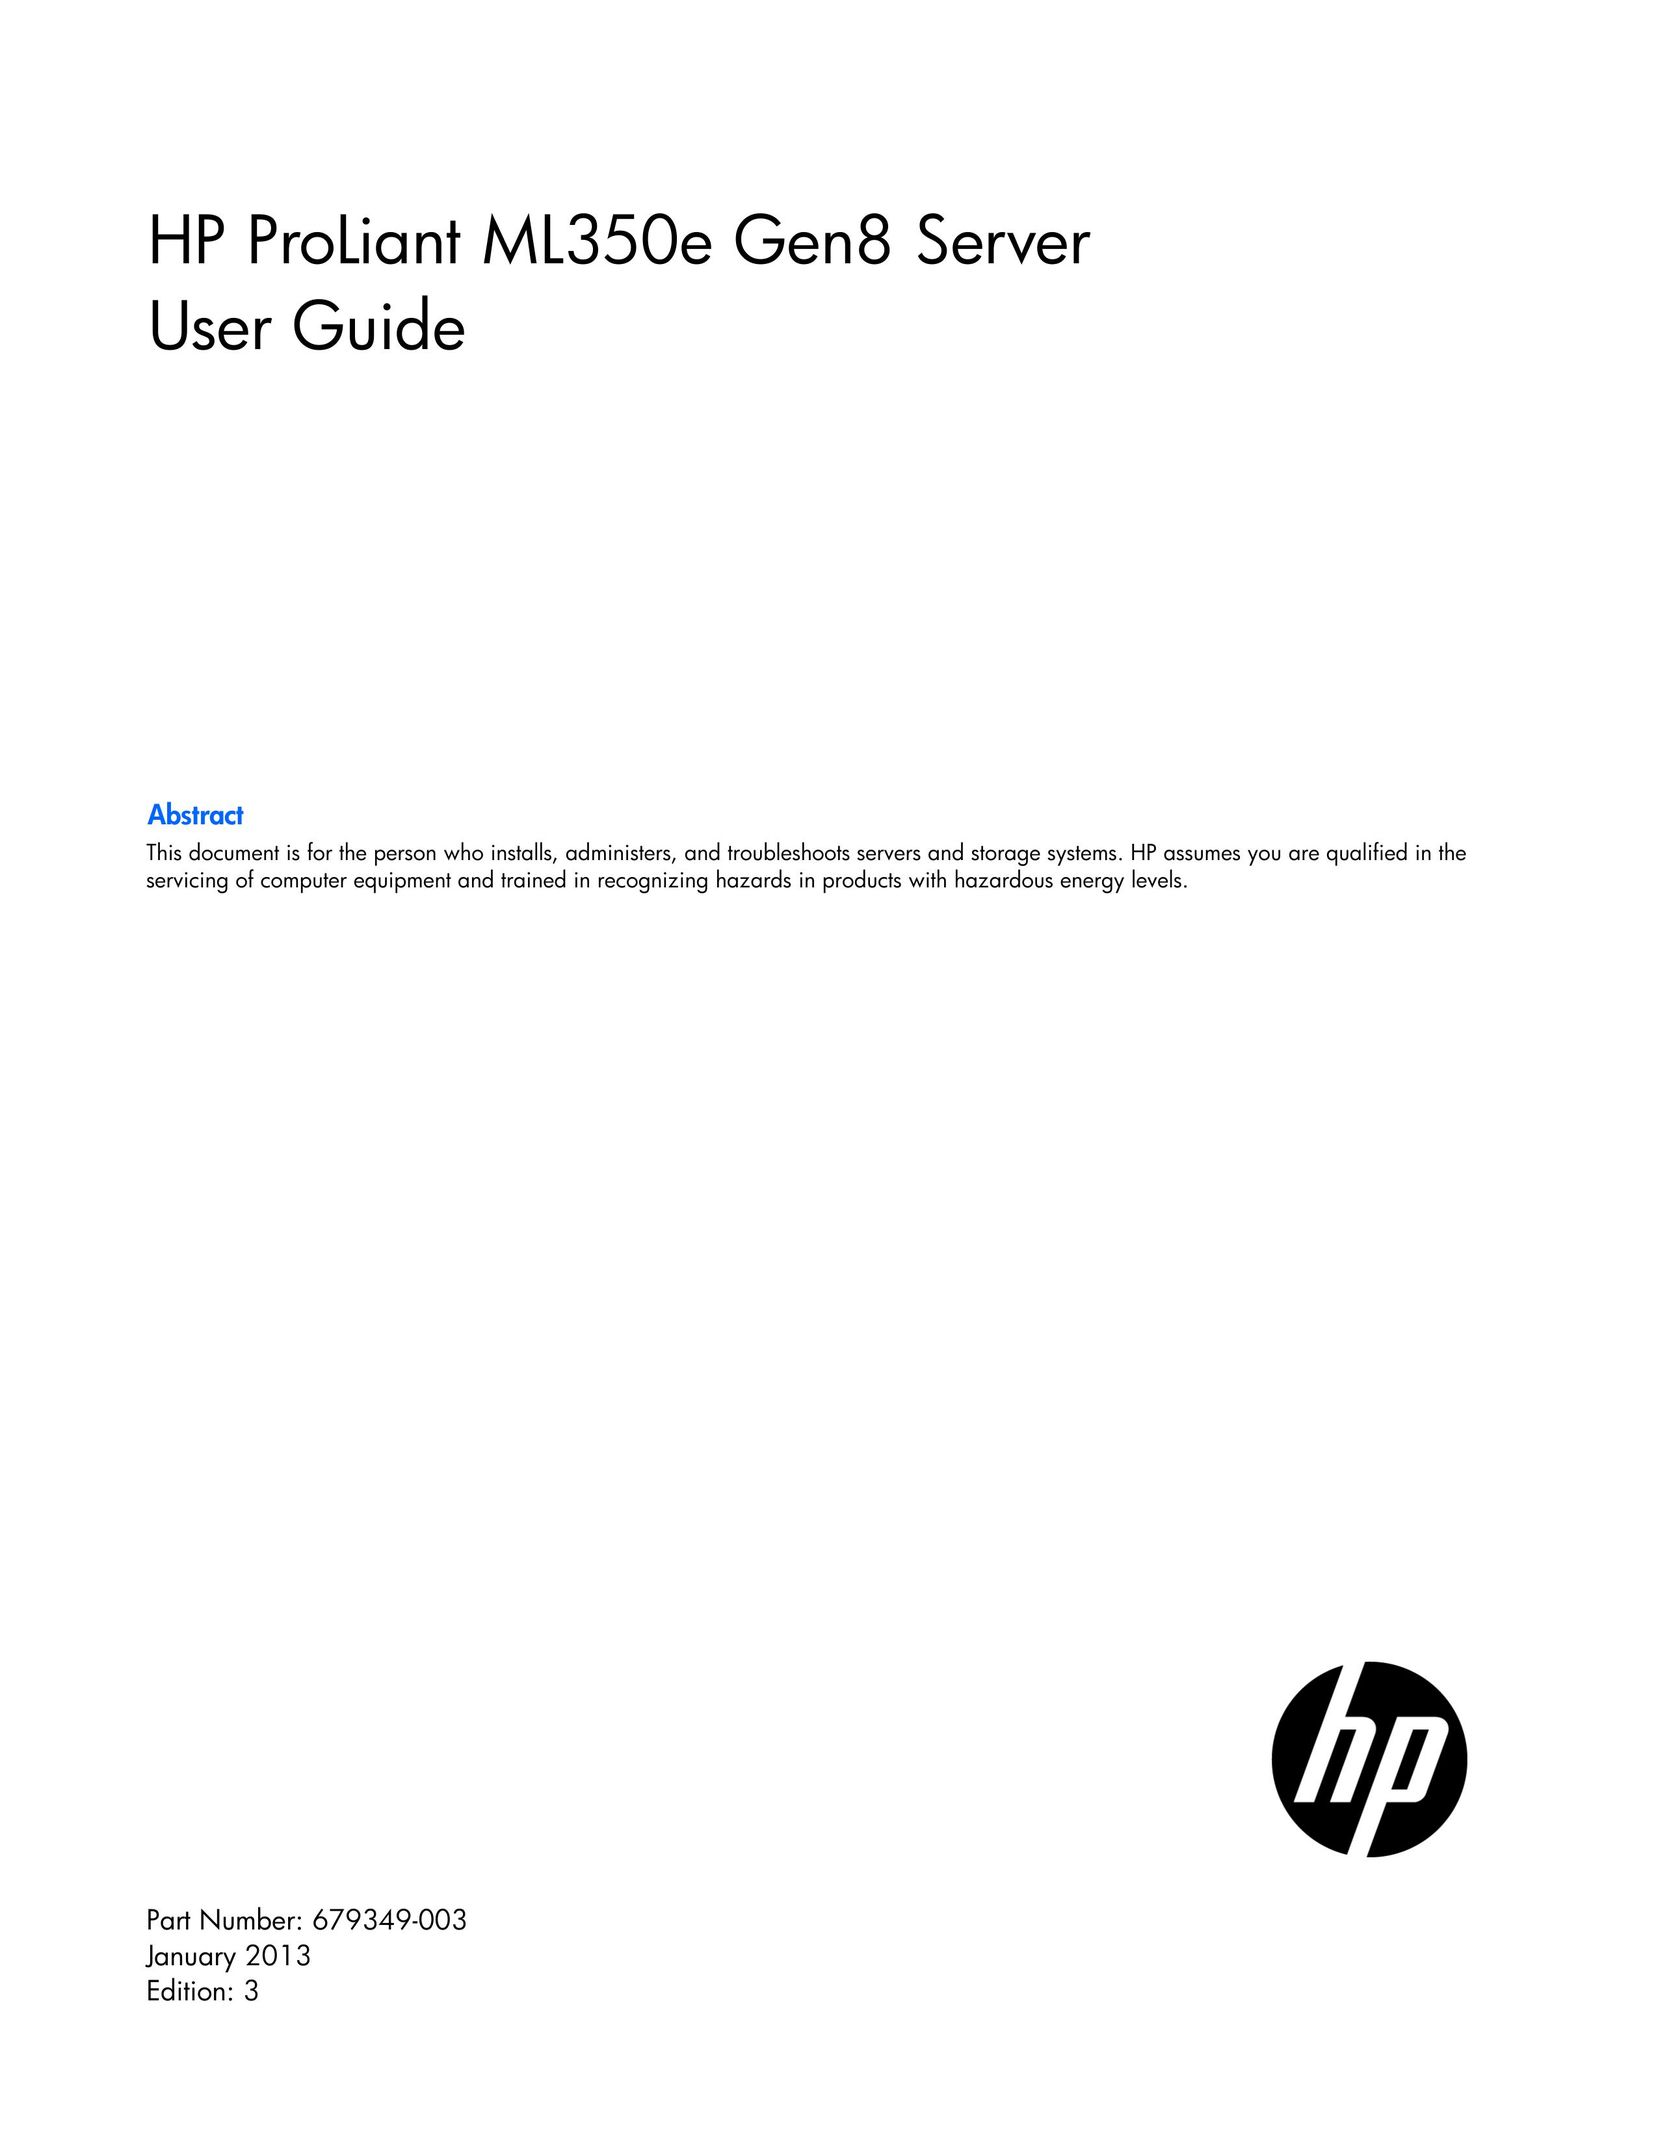 HP (Hewlett-Packard) 648375-001 Server User Manual